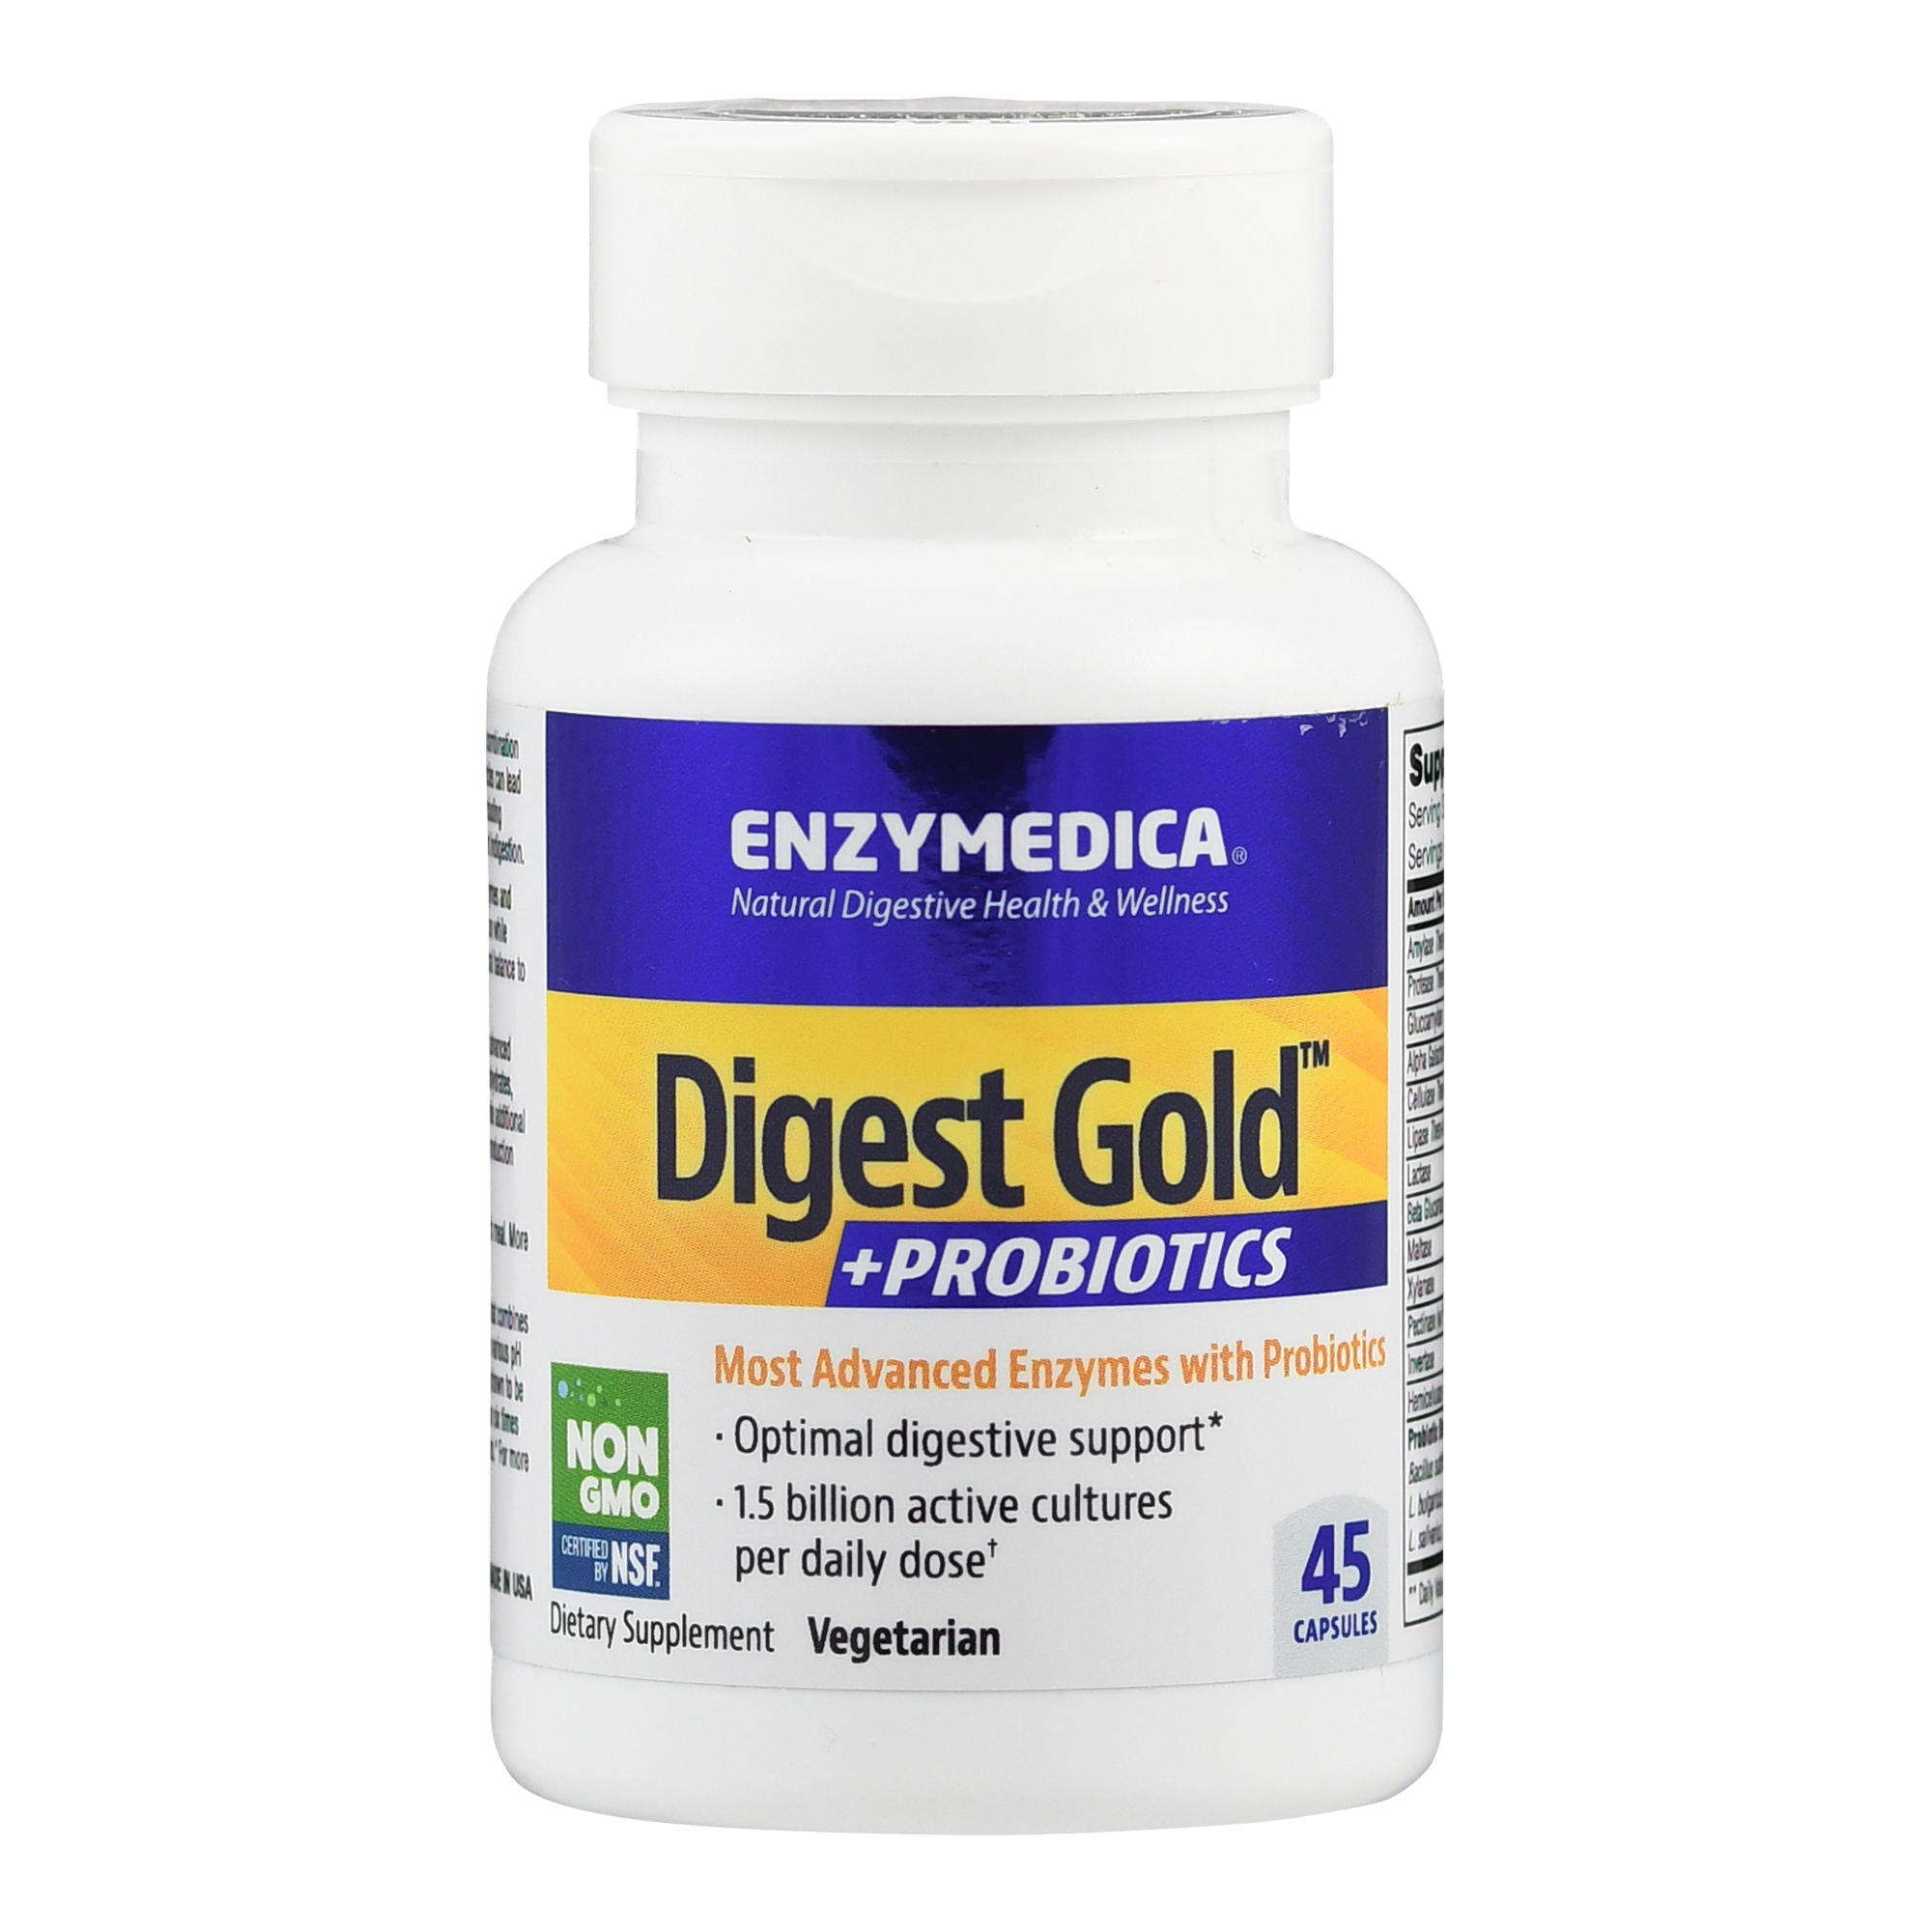 Digest Gold + natürliche Mikroorganismen von Enzymedica.